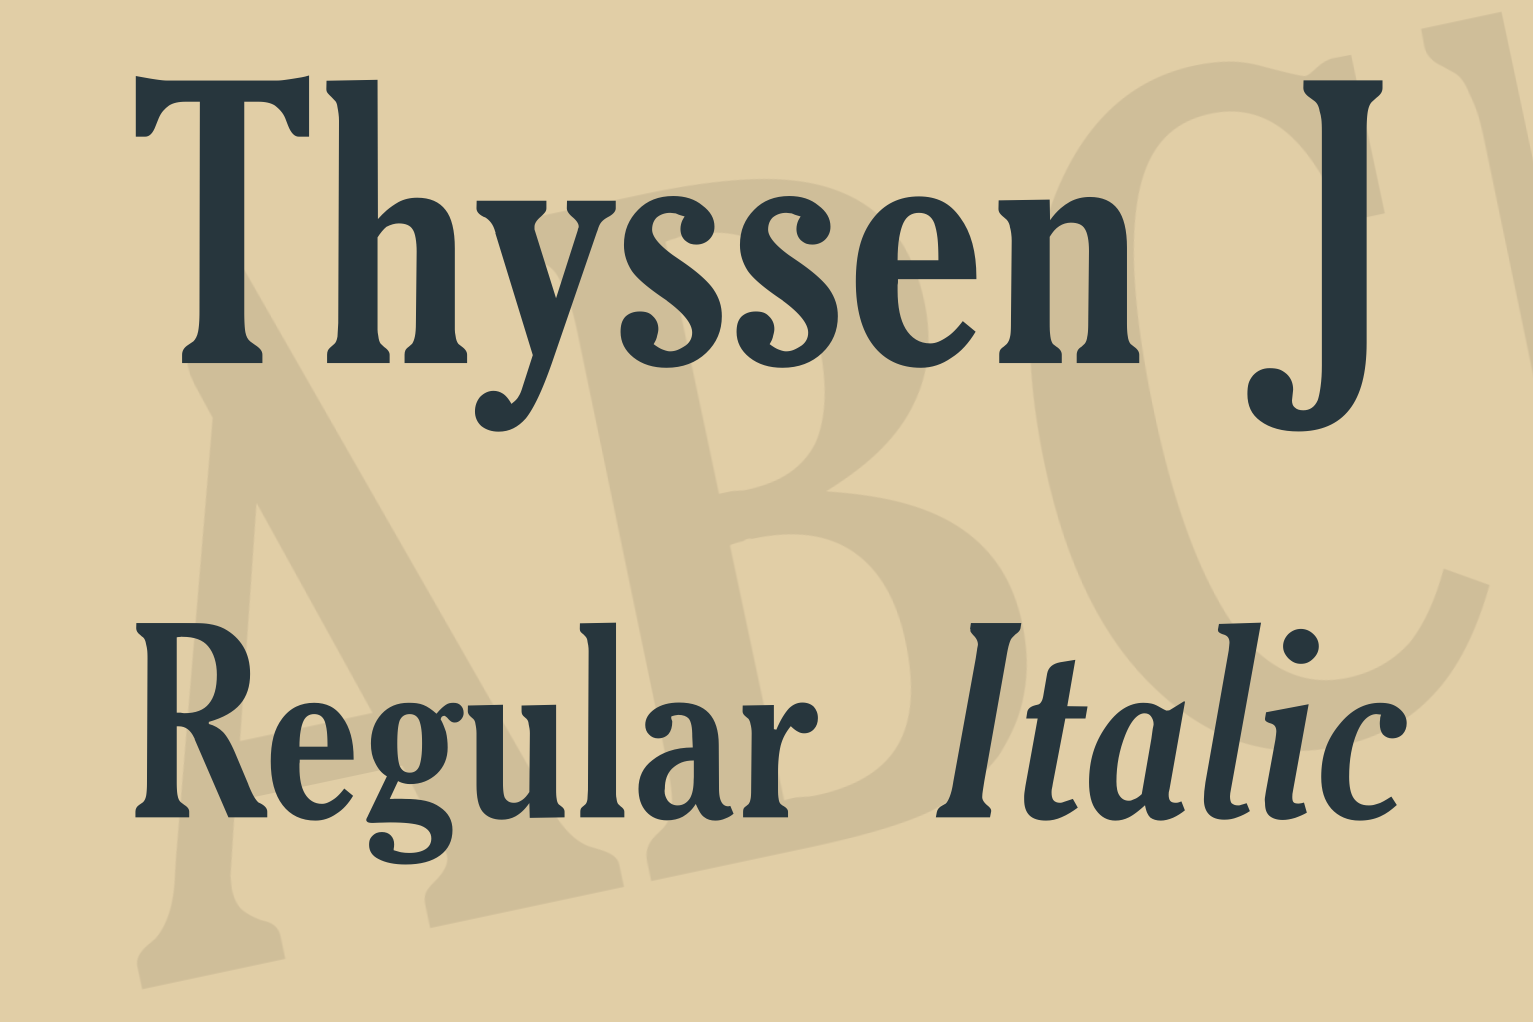 Thyssen J